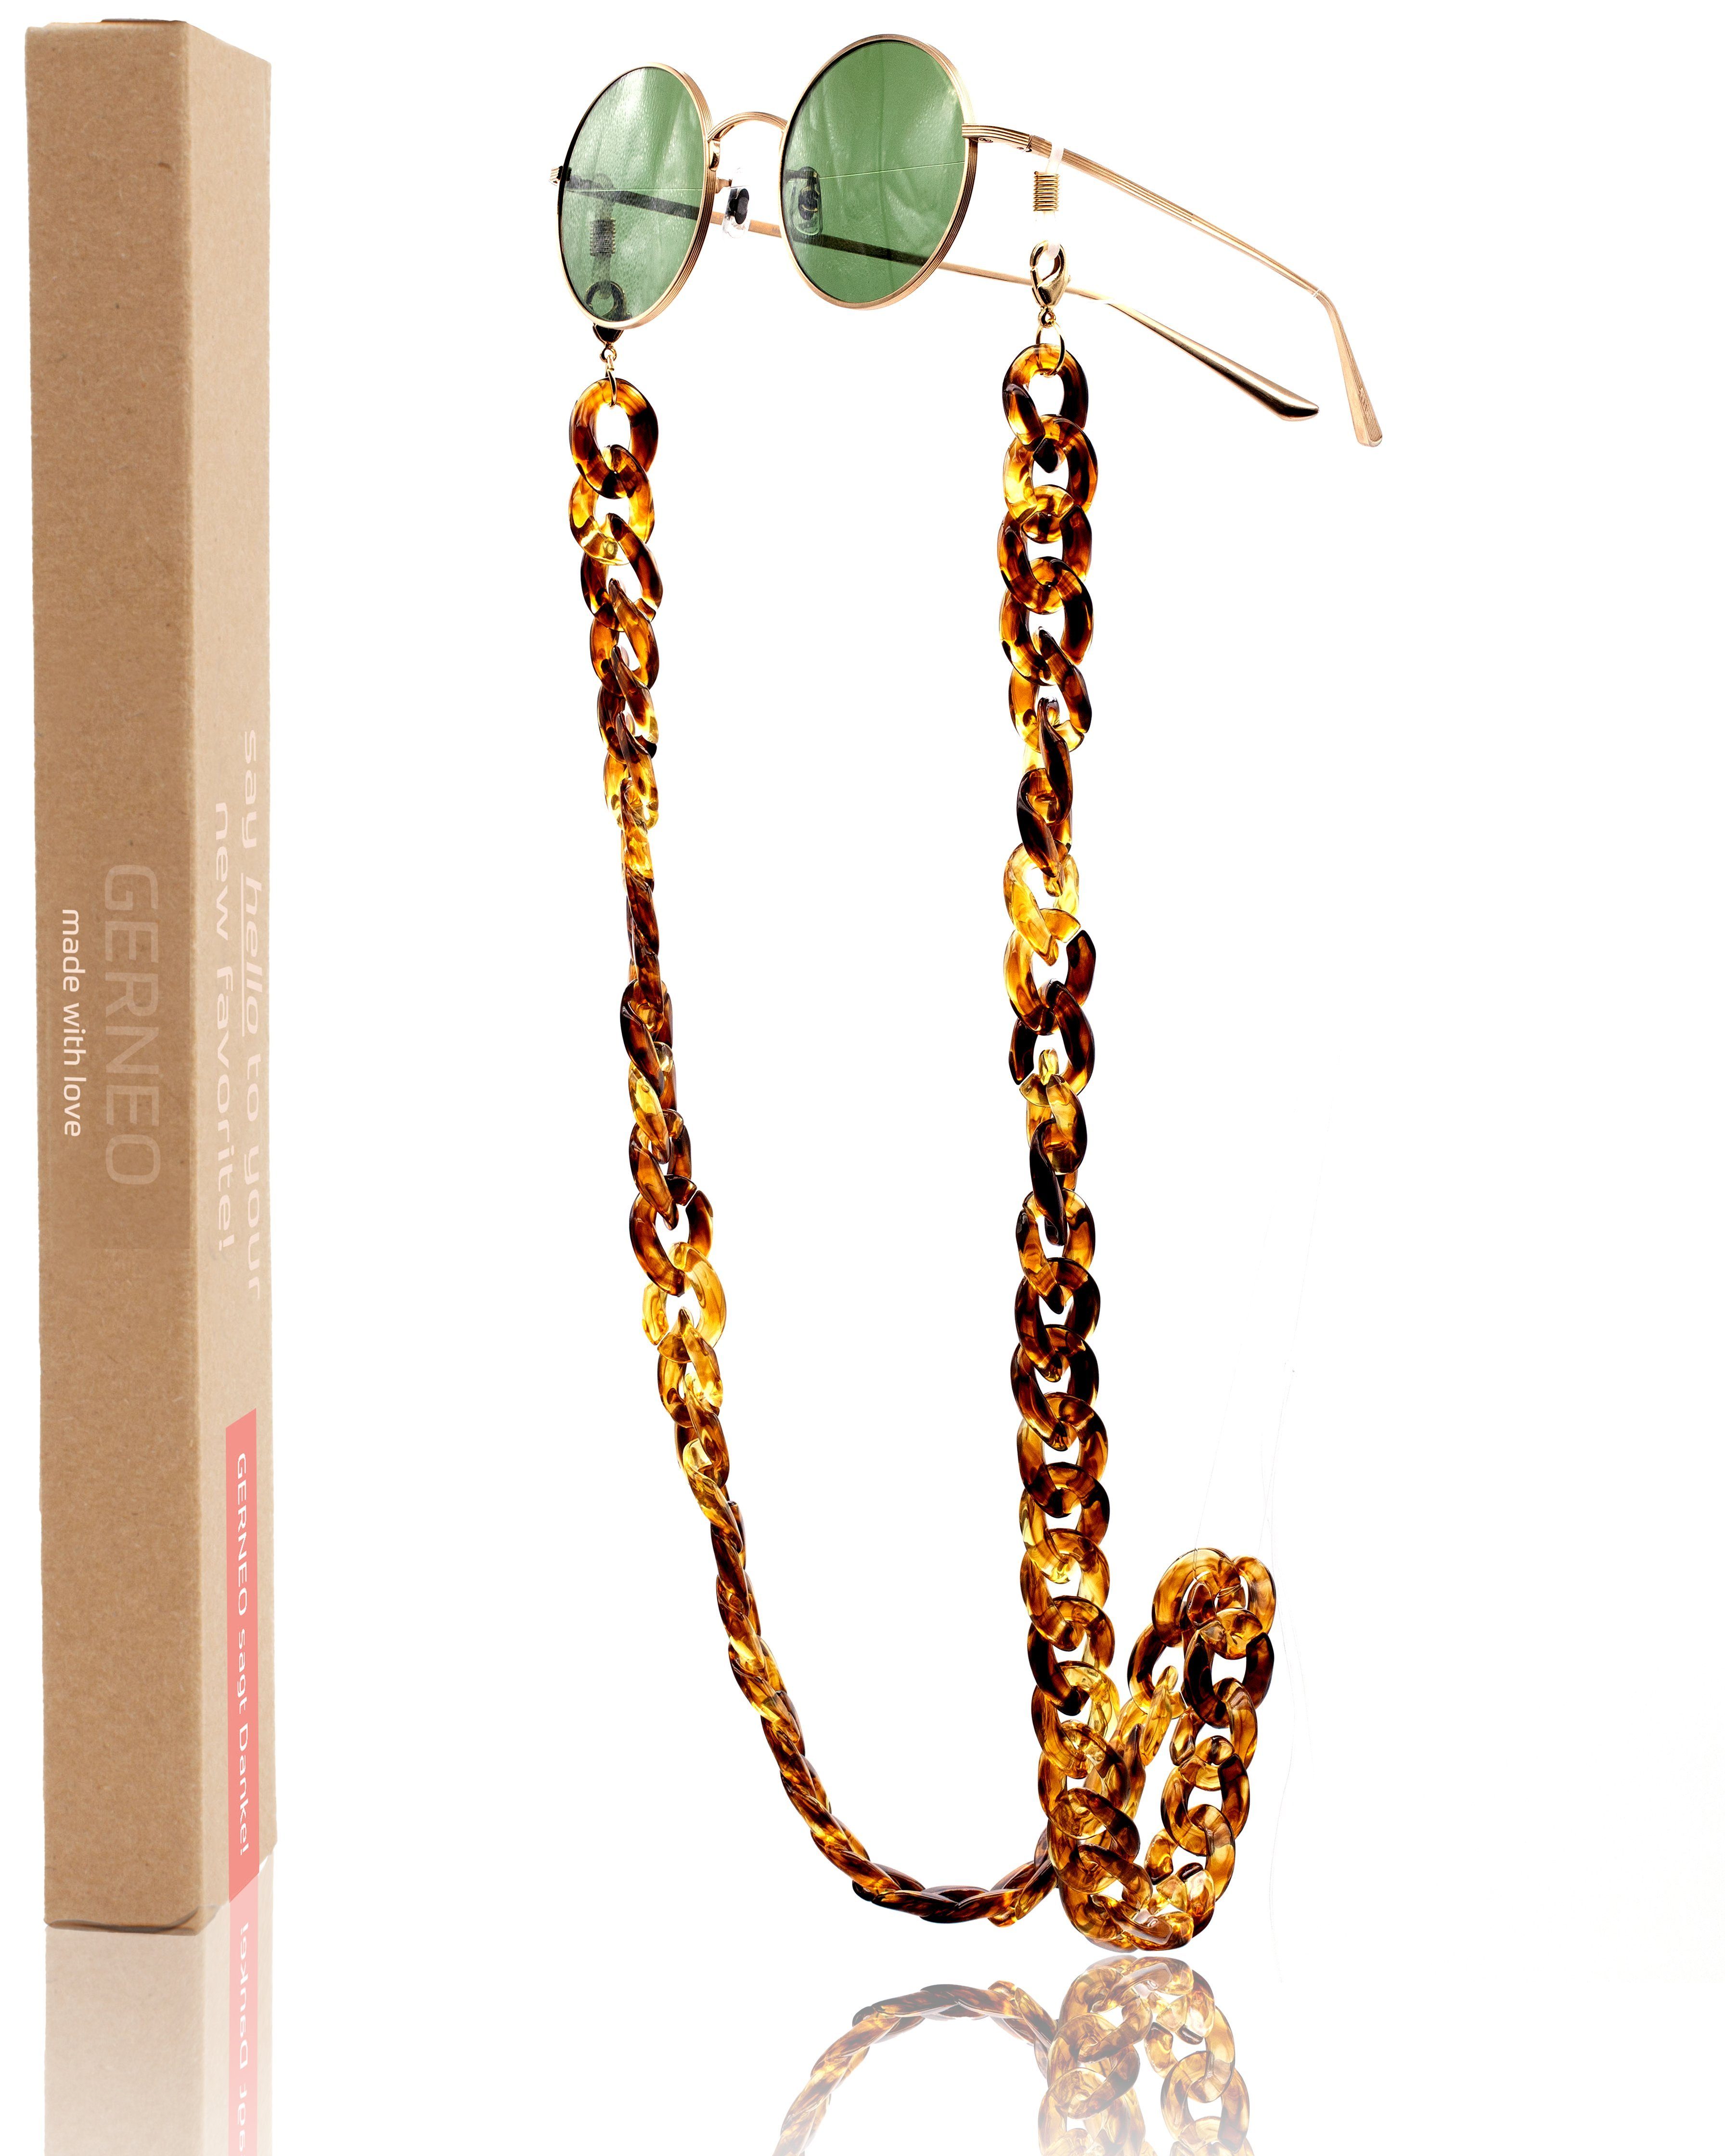 Brillenkette – Gold GERNEO & Brillenkette Maskenhalter einzigartig Brillenband aus hochwertige Havanna Braun Brillen korrosionsbeständig Kette GERNEO® - Acryl,